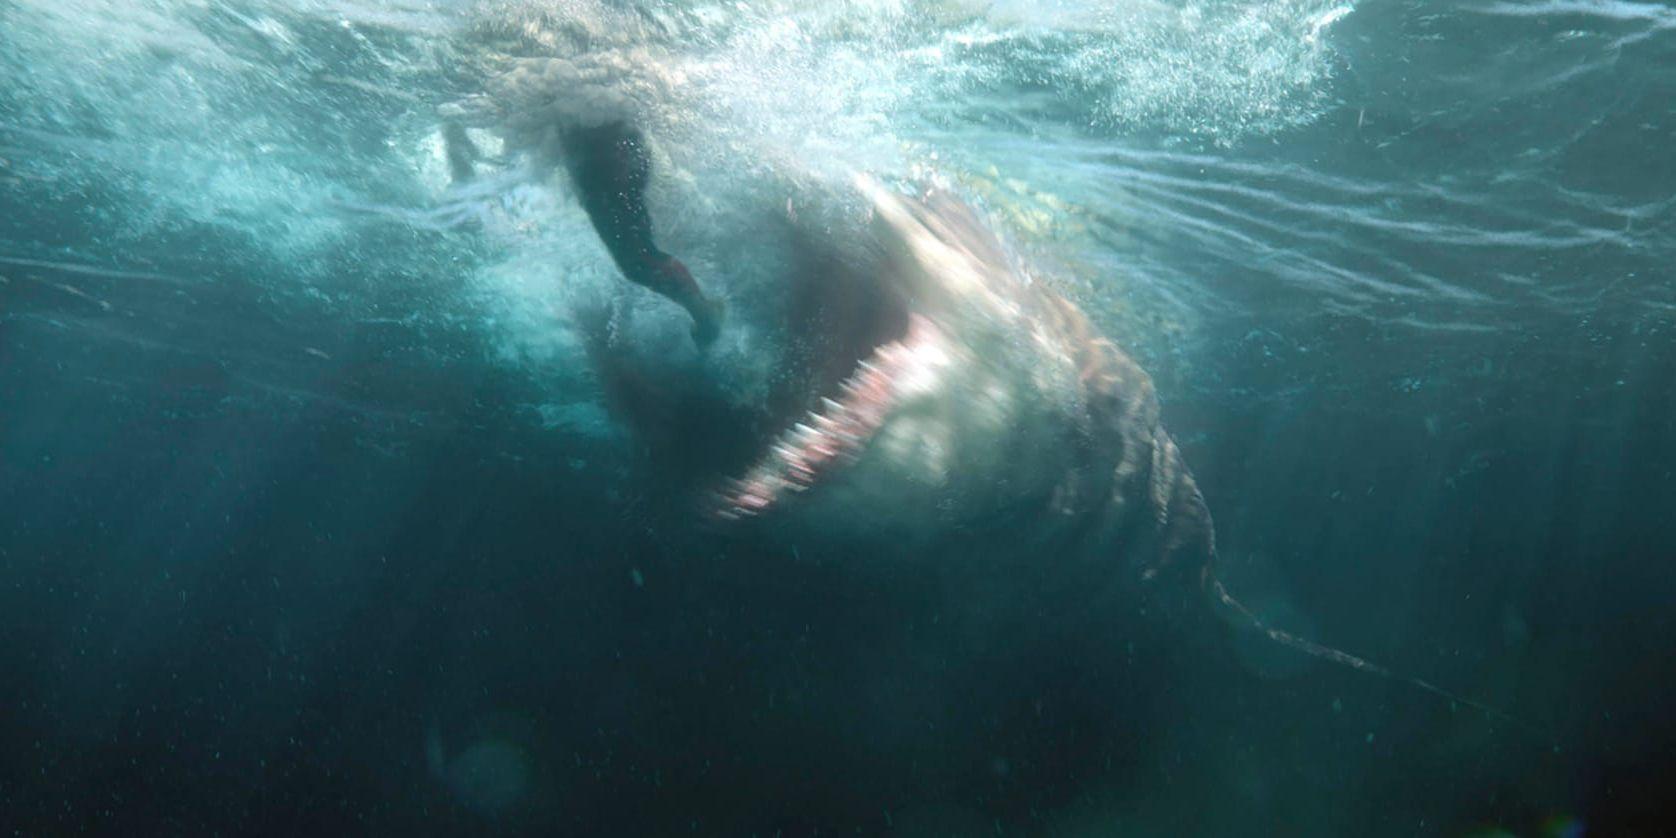 Megalodonen antas ha dött ut för 2,6 miljoner år sedan – eller? På bio gör hajen nu en blodtörstig comeback. Men hur väl stämmer den filmiska versionen med verkligheten? På bilden syns jättehajens tänder och käft tydligt, något som filmmakarna lyckats väl med, enligt experten Hans Sues. Pressbild.